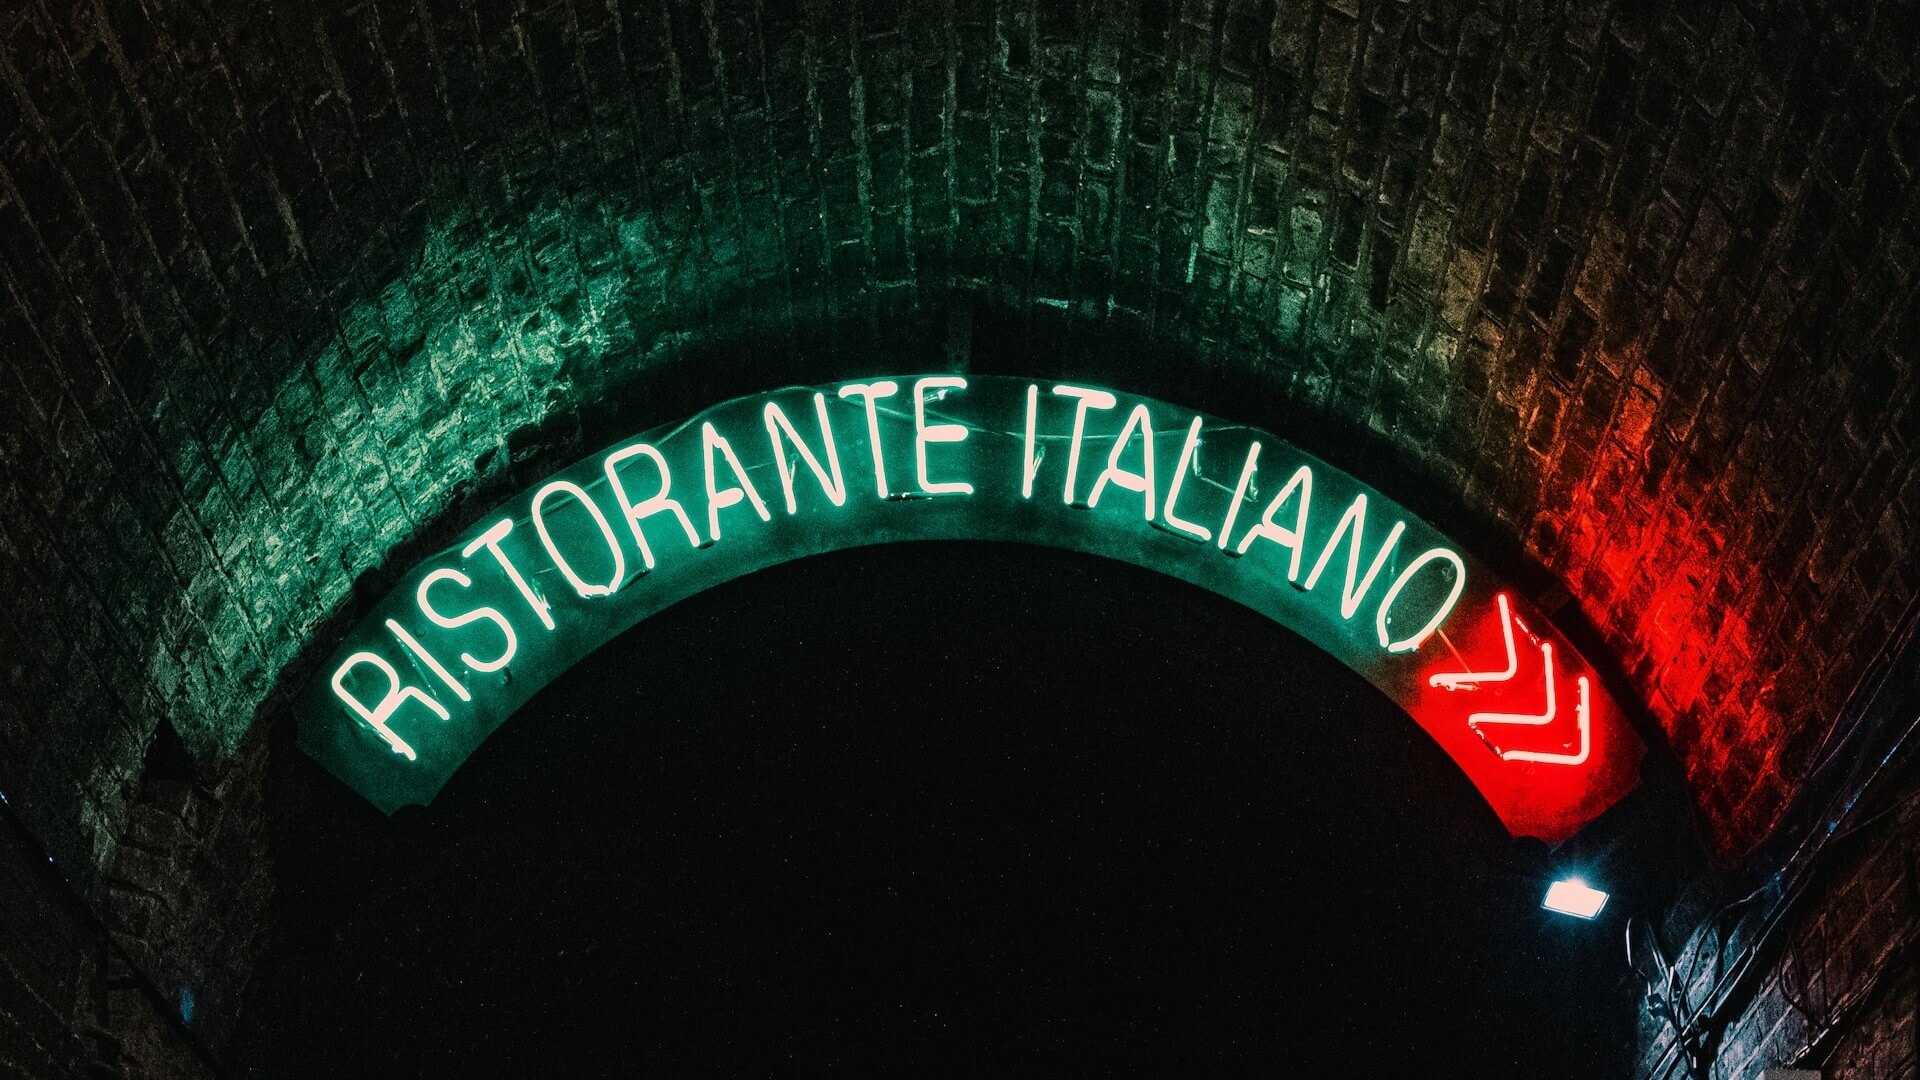 Un'insegna al neon con la scritta 'Ristorante Italiano', che indica un ristorante italiano